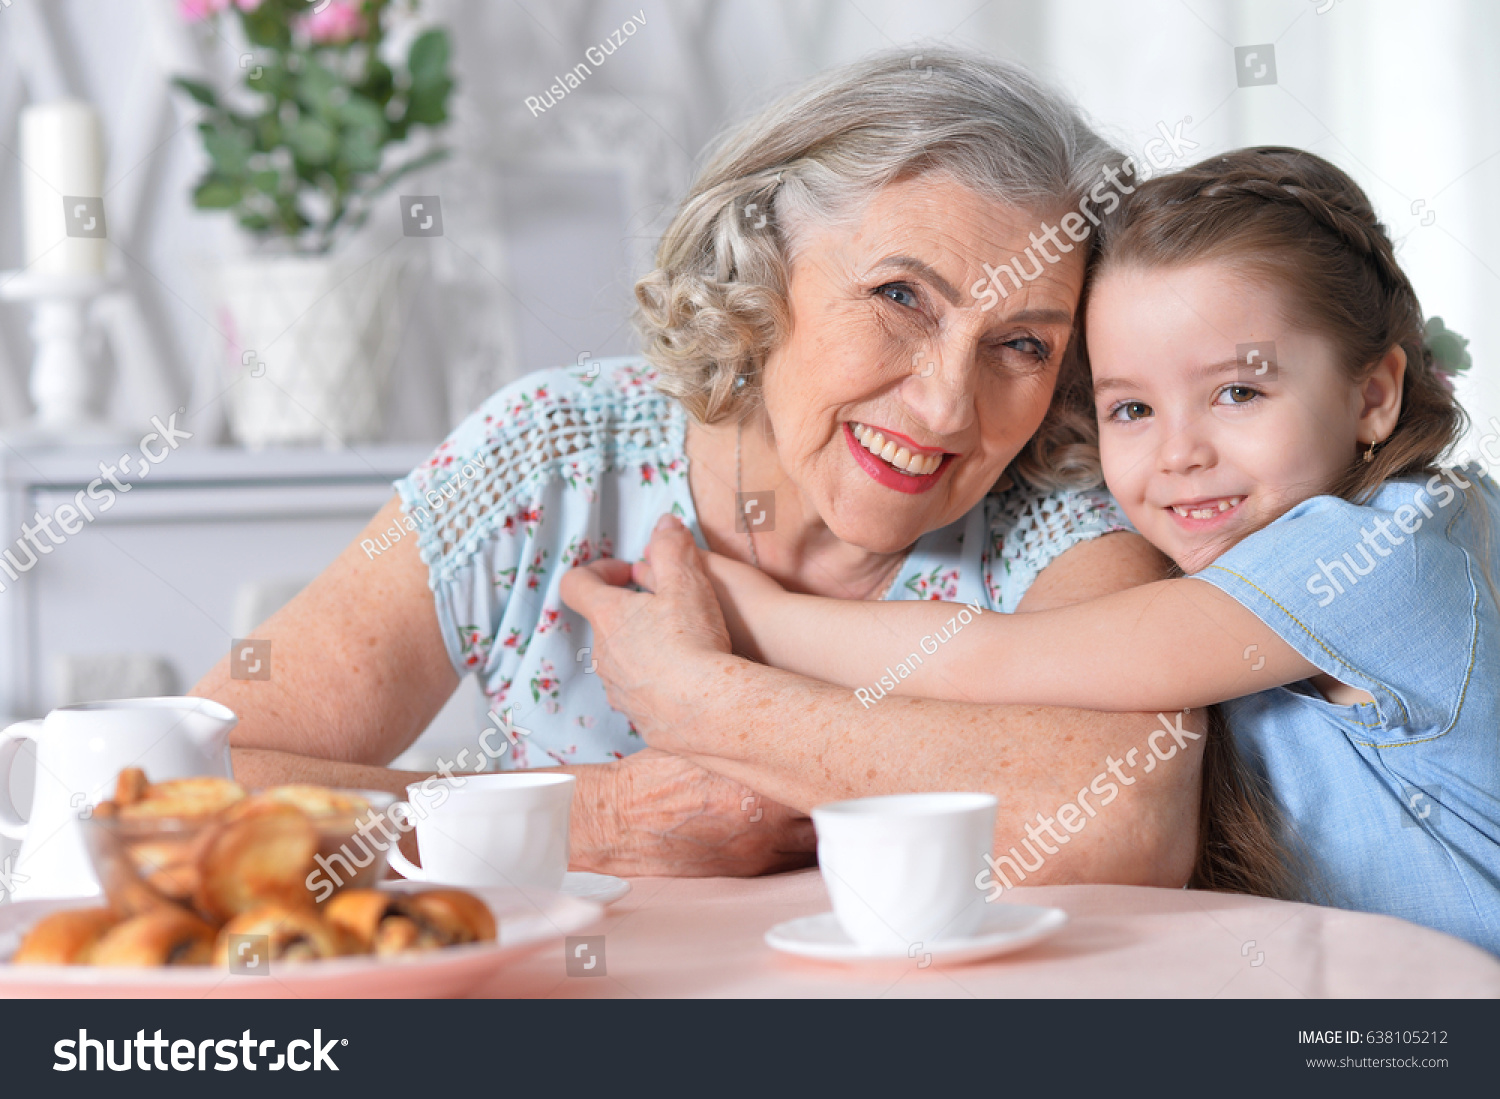 Бабушка с внучкой в образе